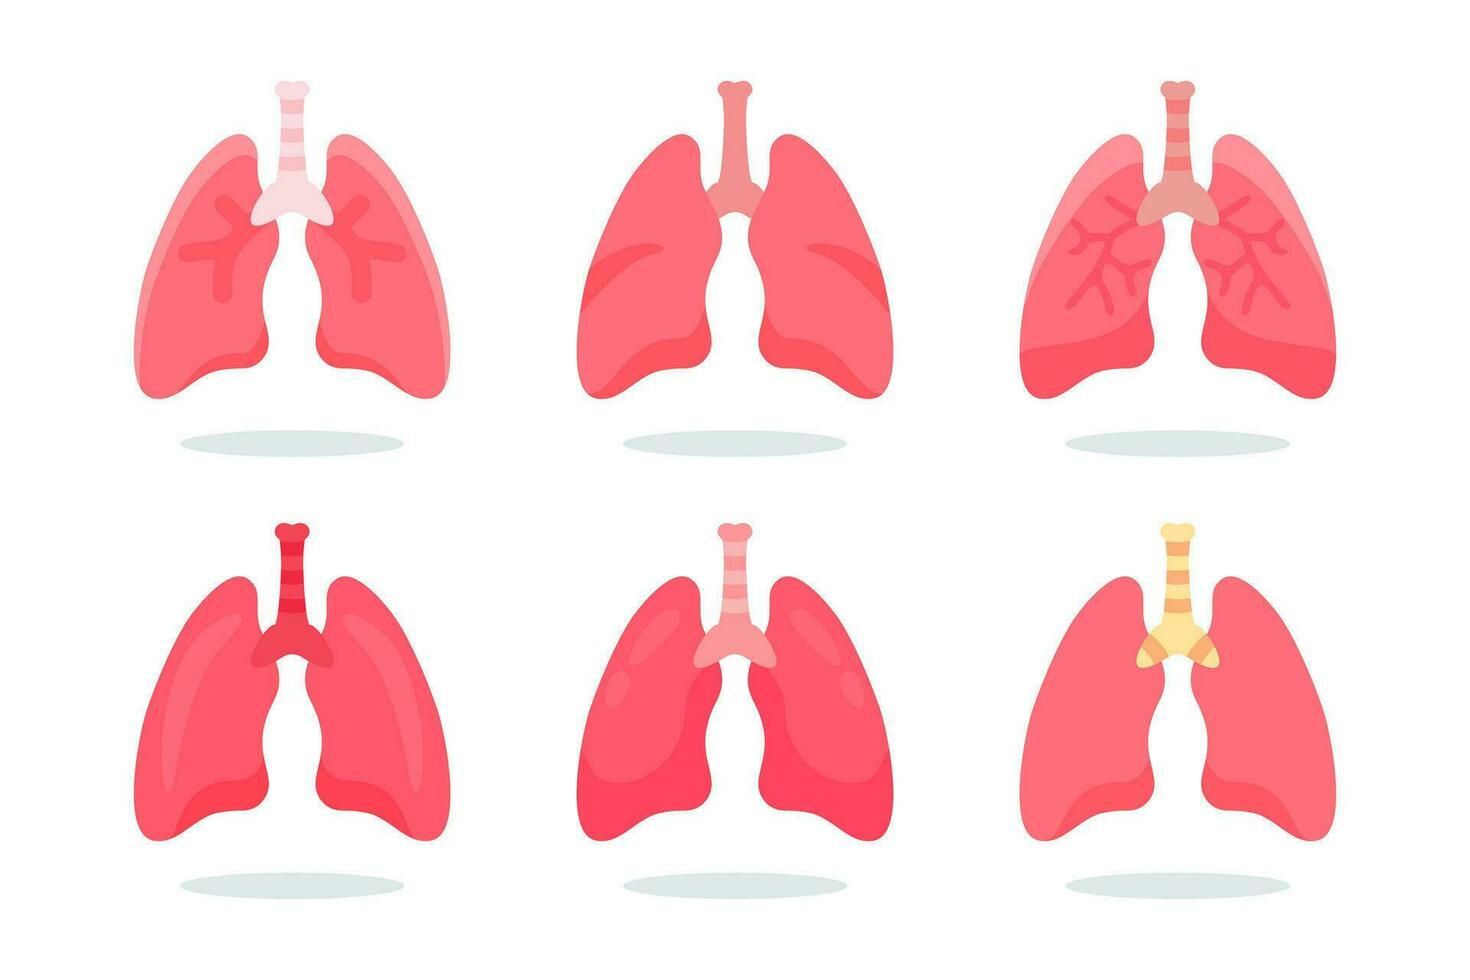 Mensch intern Lunge Vektor. Mensch Lunge Anatomie Struktur Illustration vektor